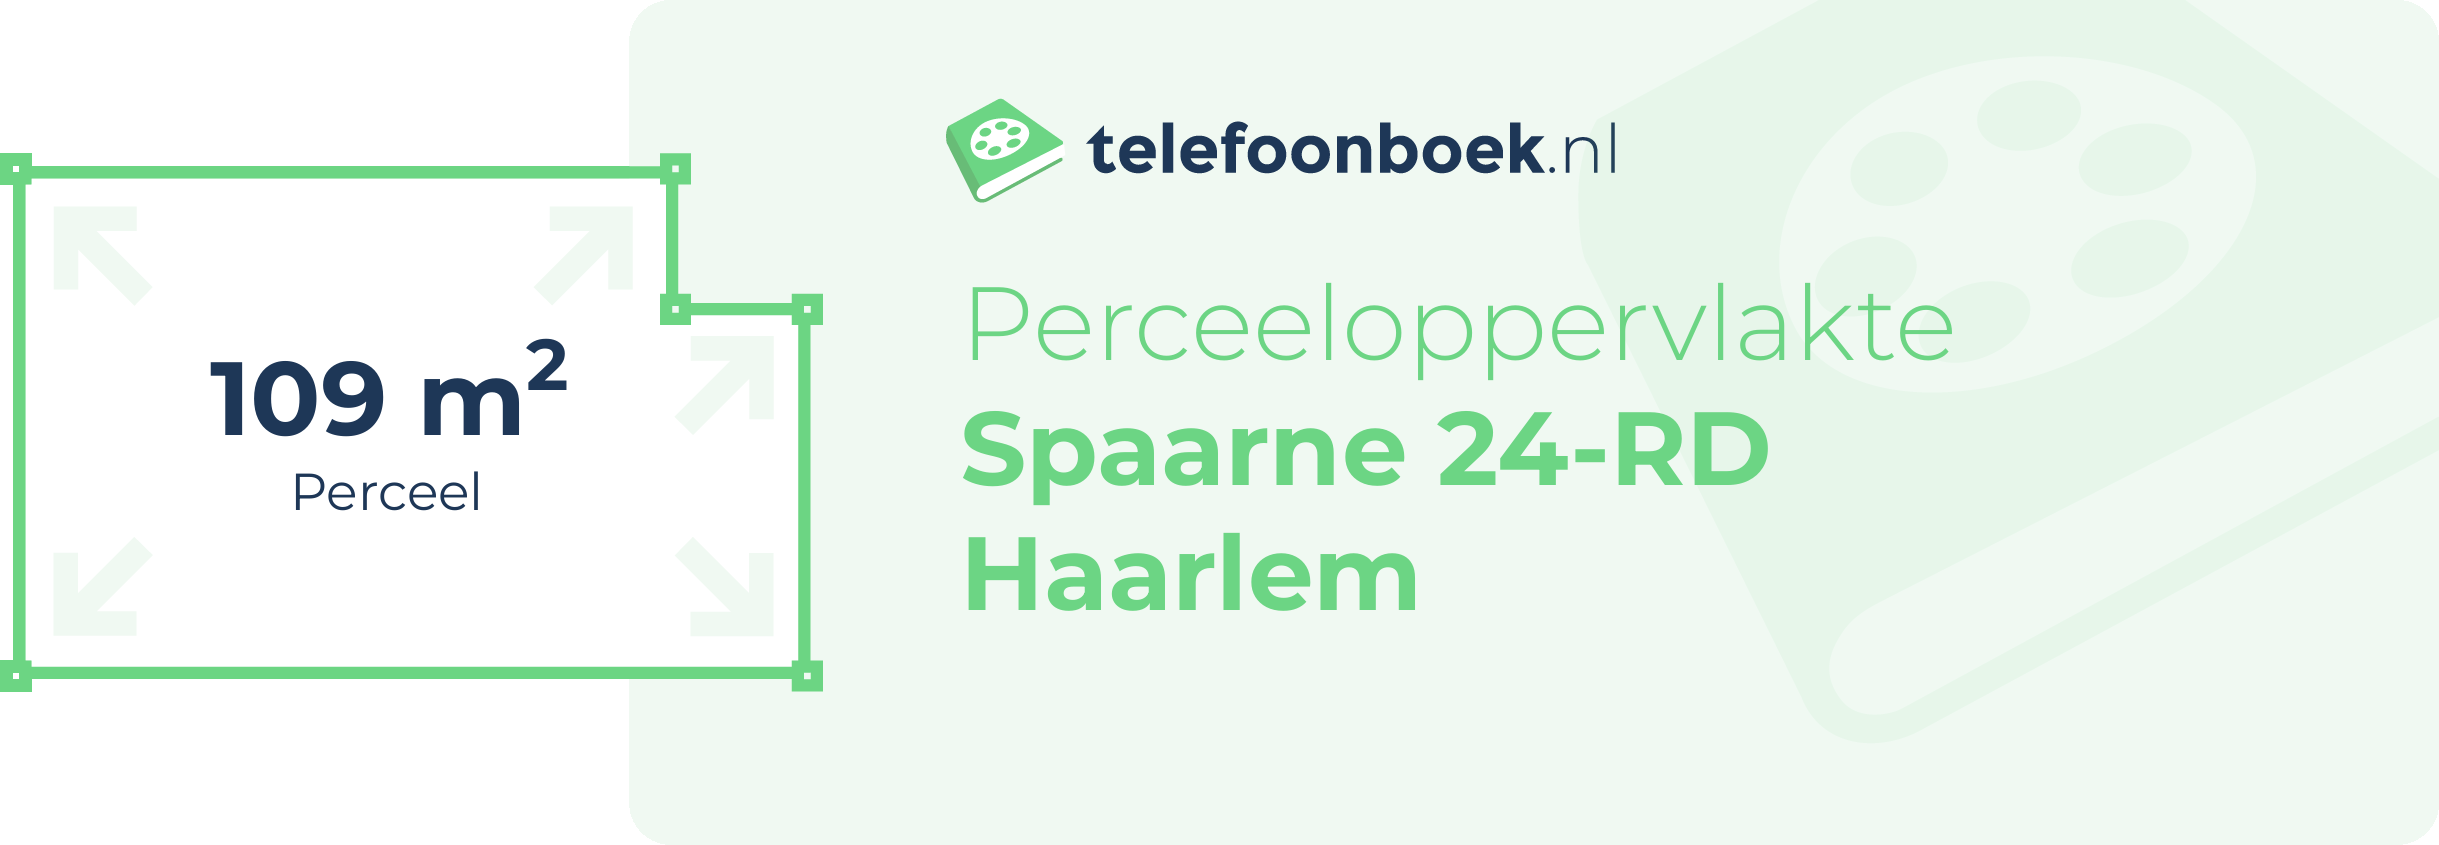 Perceeloppervlakte Spaarne 24-RD Haarlem